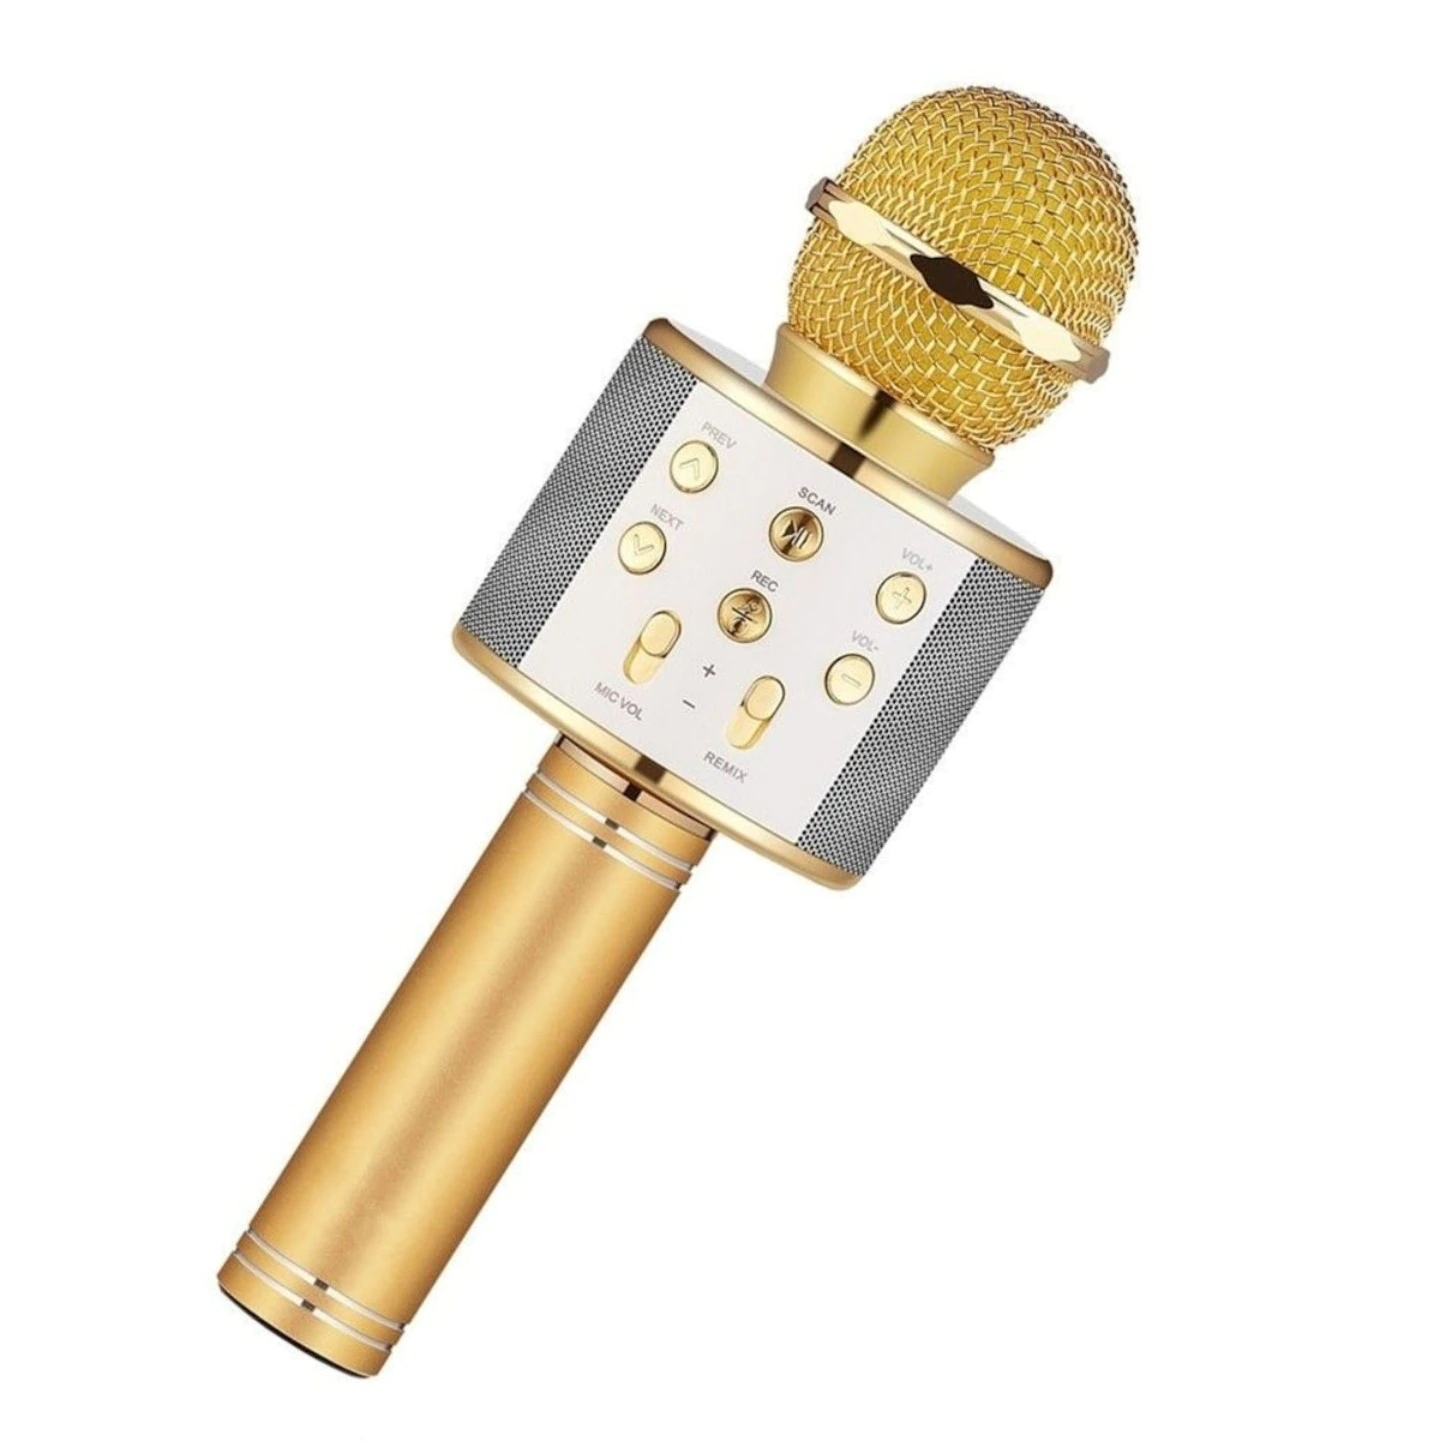 Pachet promo: Microfon karaoke copii, wireless, cu acumulator, compatibil cu iOS si Android WS-858, functie de schimbare a vocii, auriu + Jucarie Push Pop Bubble